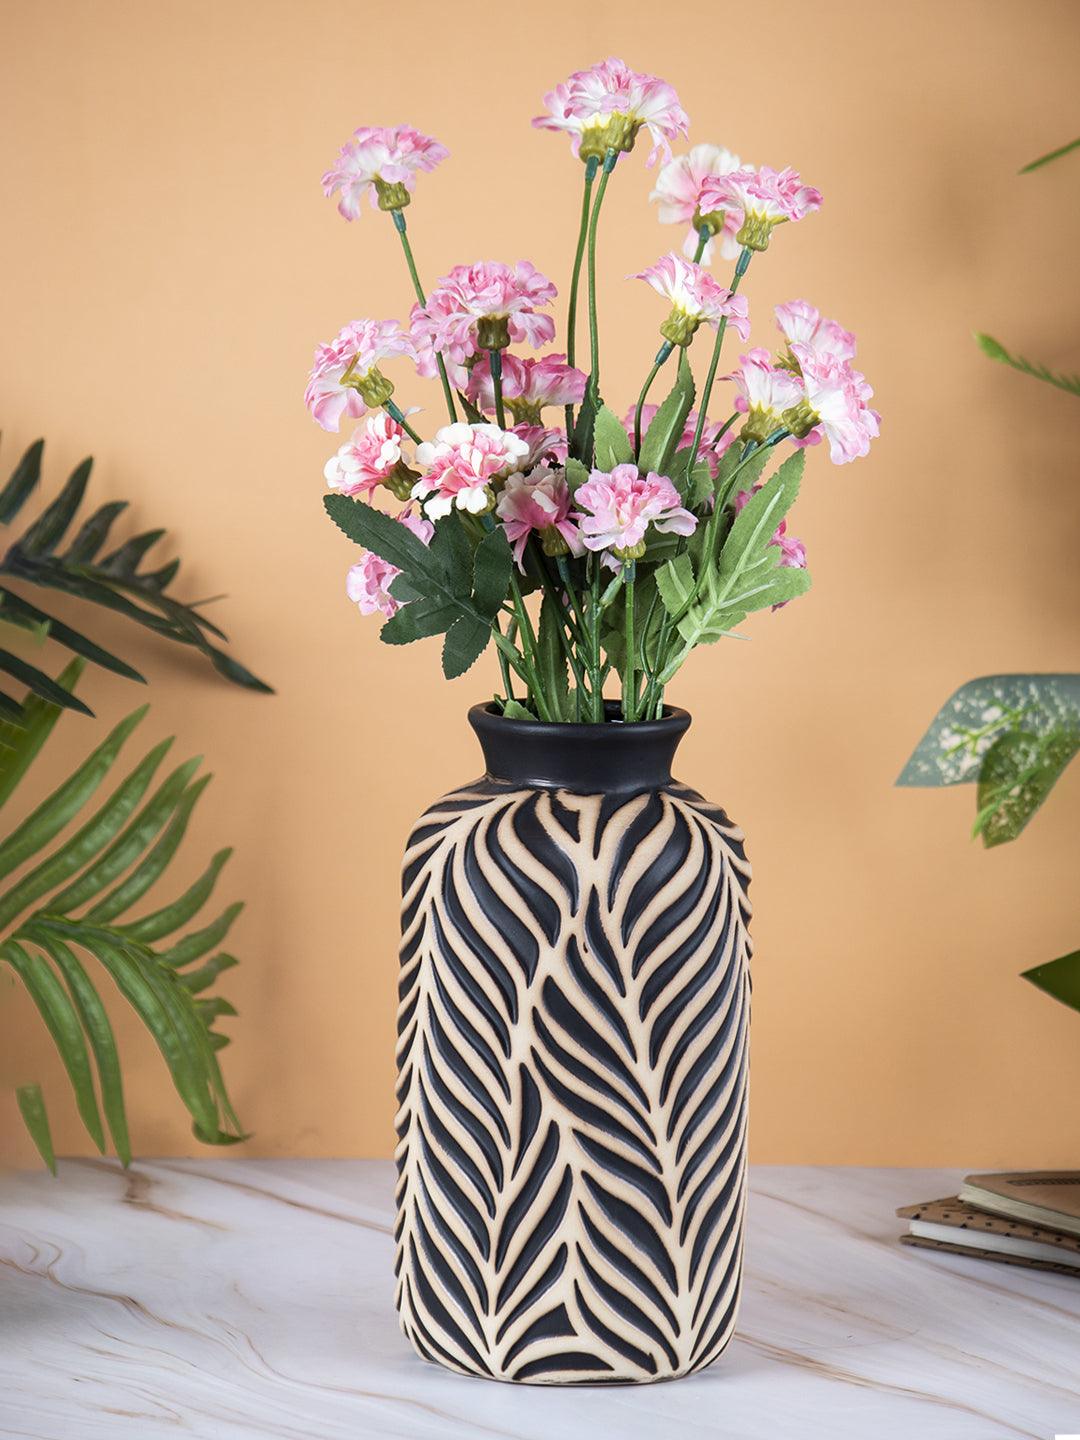 VON CASA Ceramic Black +Grey Cyclendrical Vase - VON CASA